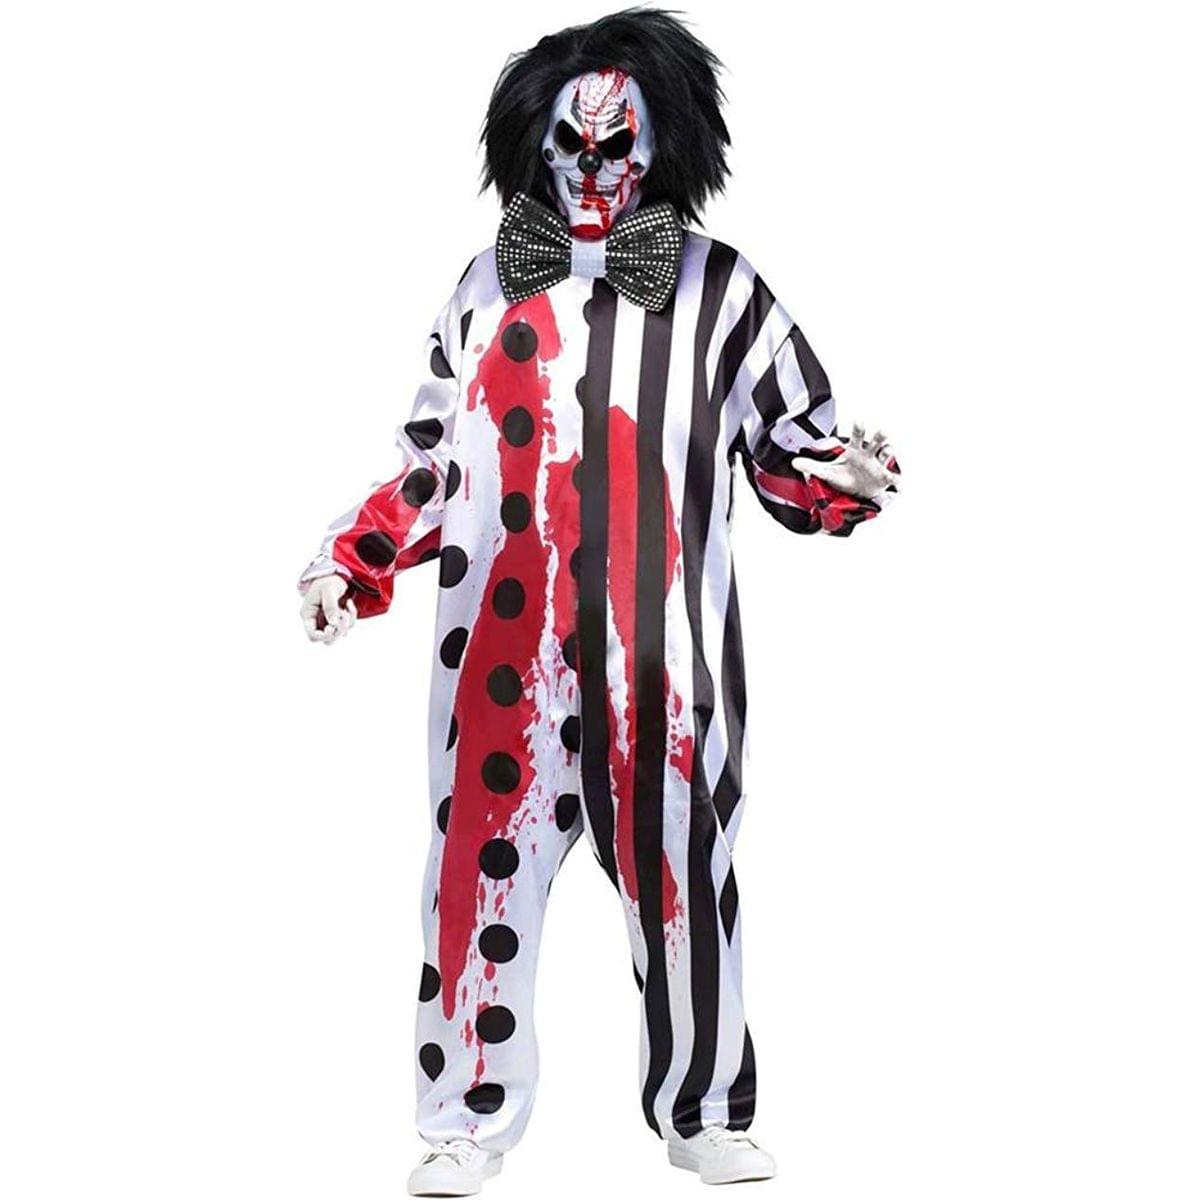 Bleeding Killer Clown Adult Costume